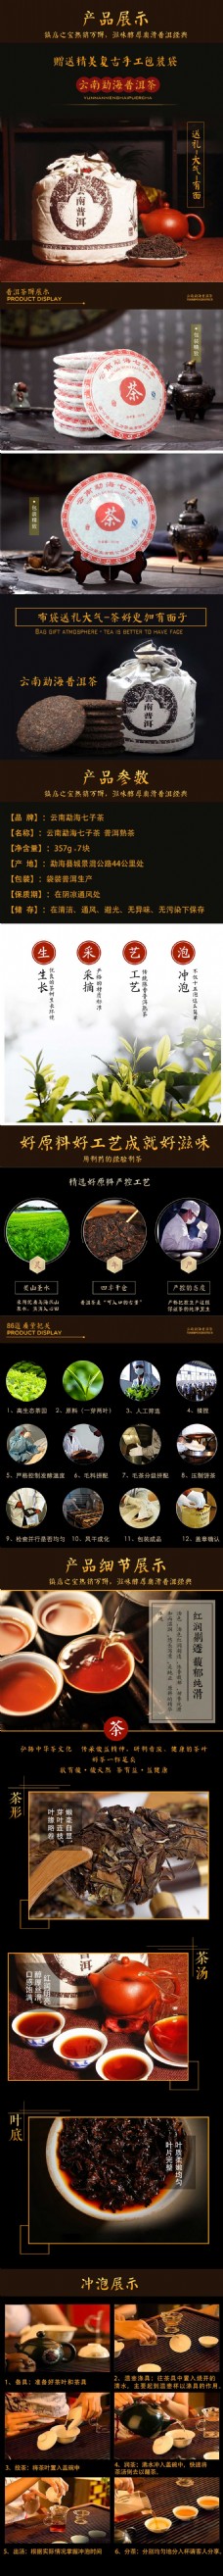 中国风情电商淘宝活动大促醇香普洱茶产品展示中国风茶叶详情页